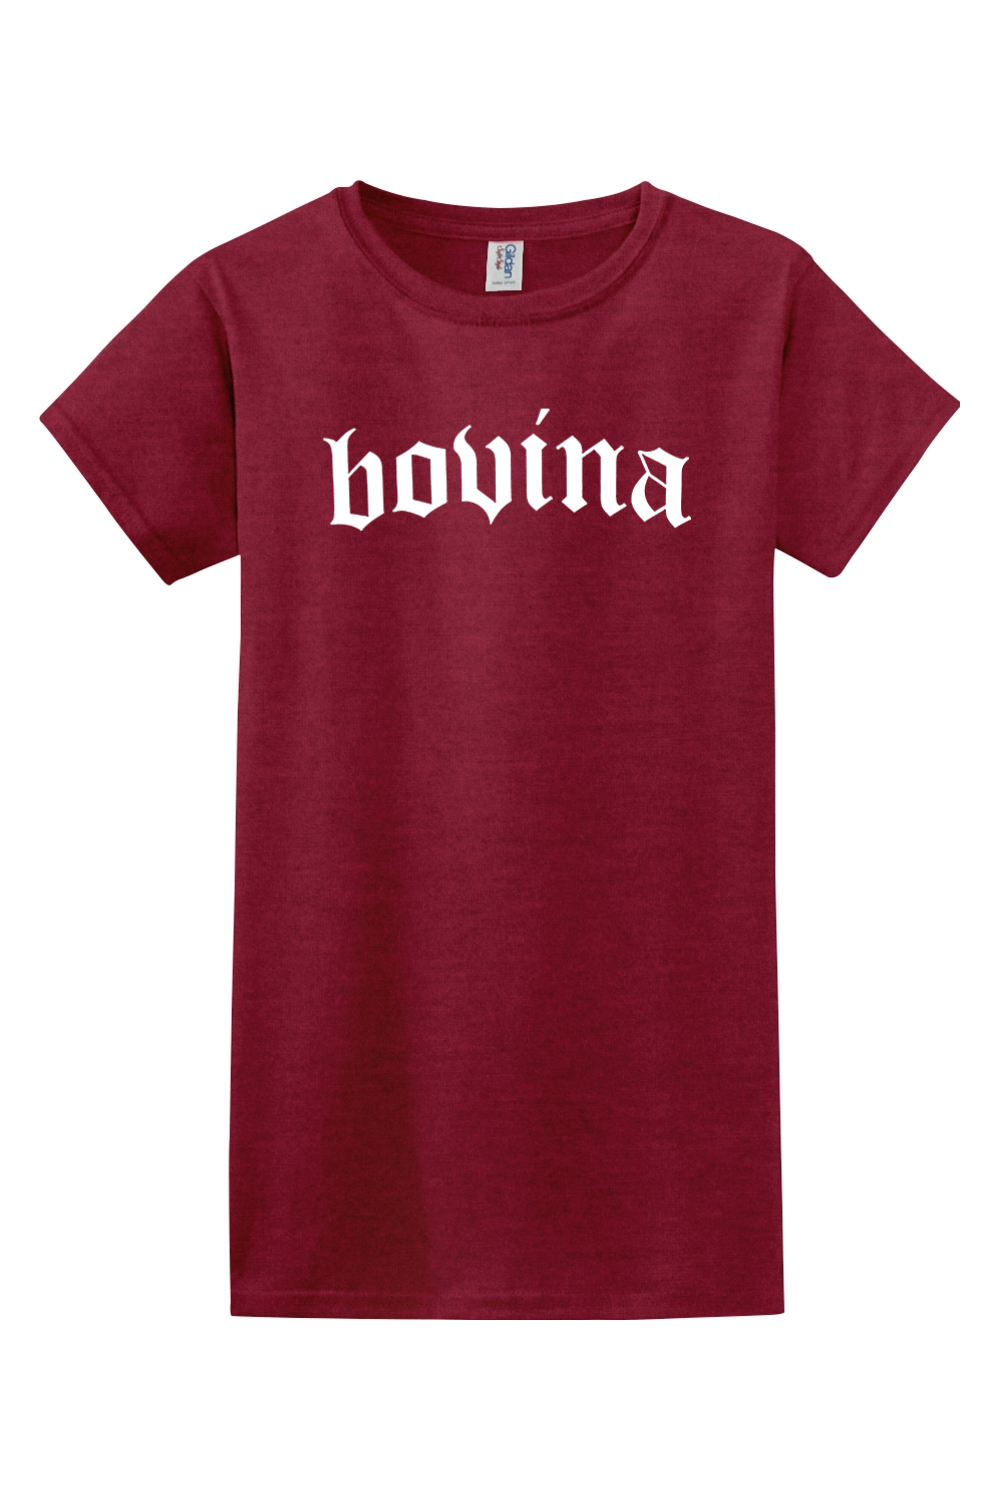 BOVINA - Ladies T-Shirt